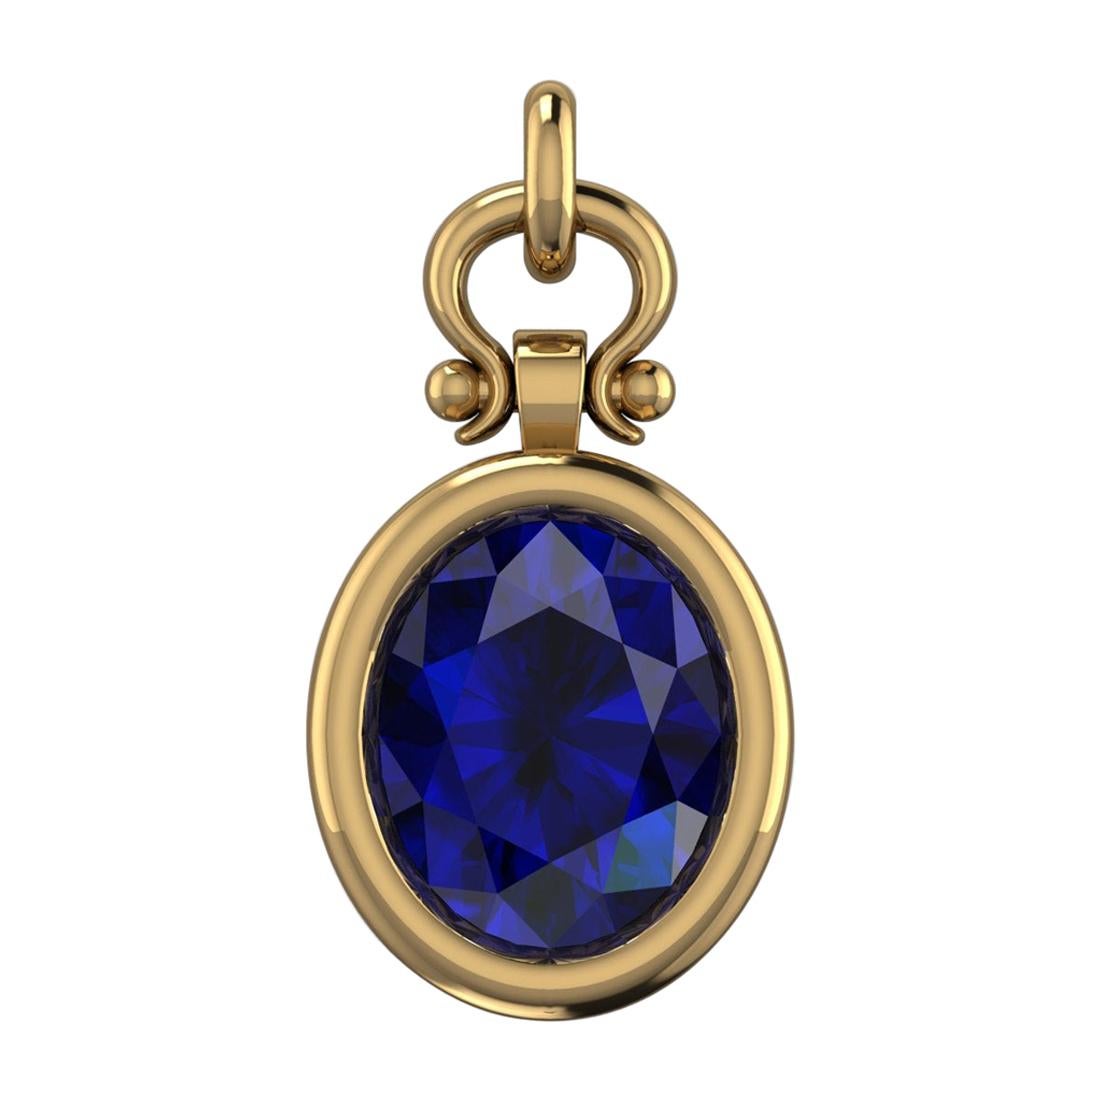 3.09 Carat Oval Cut Blue Sapphire Custom Pendant Necklace in 18k